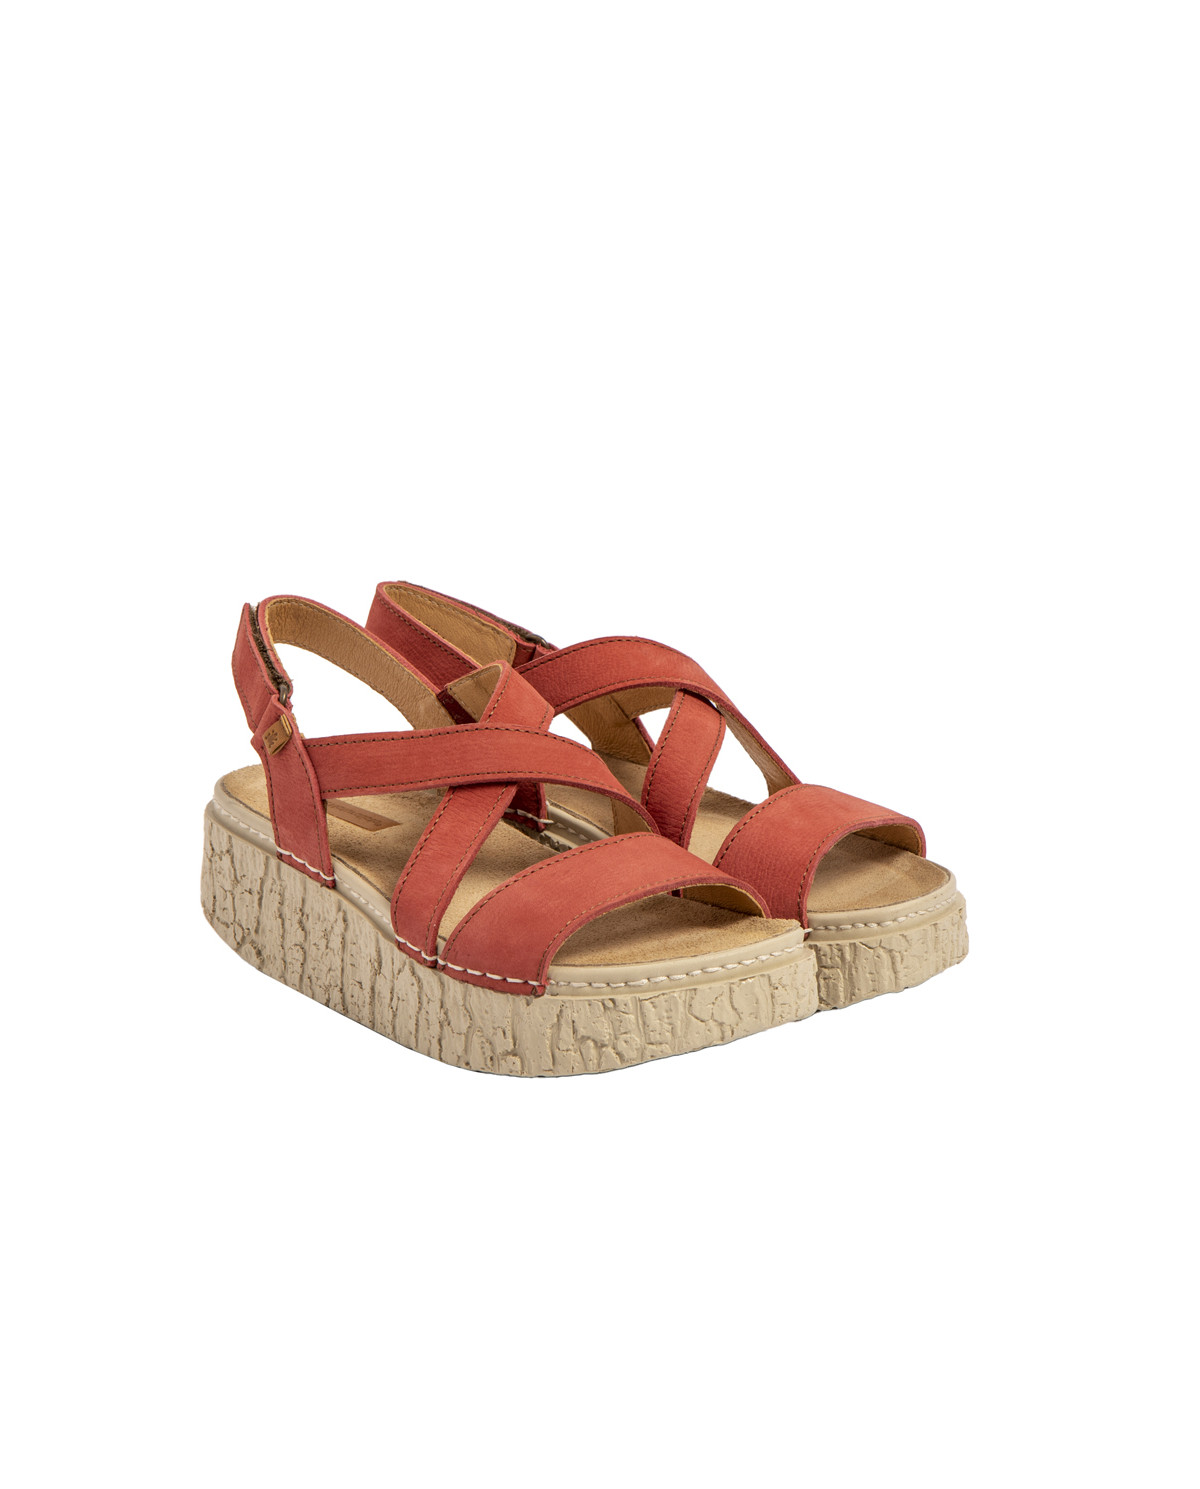 Sandales confortables compensées en cuir suédé - Rose - El naturalista